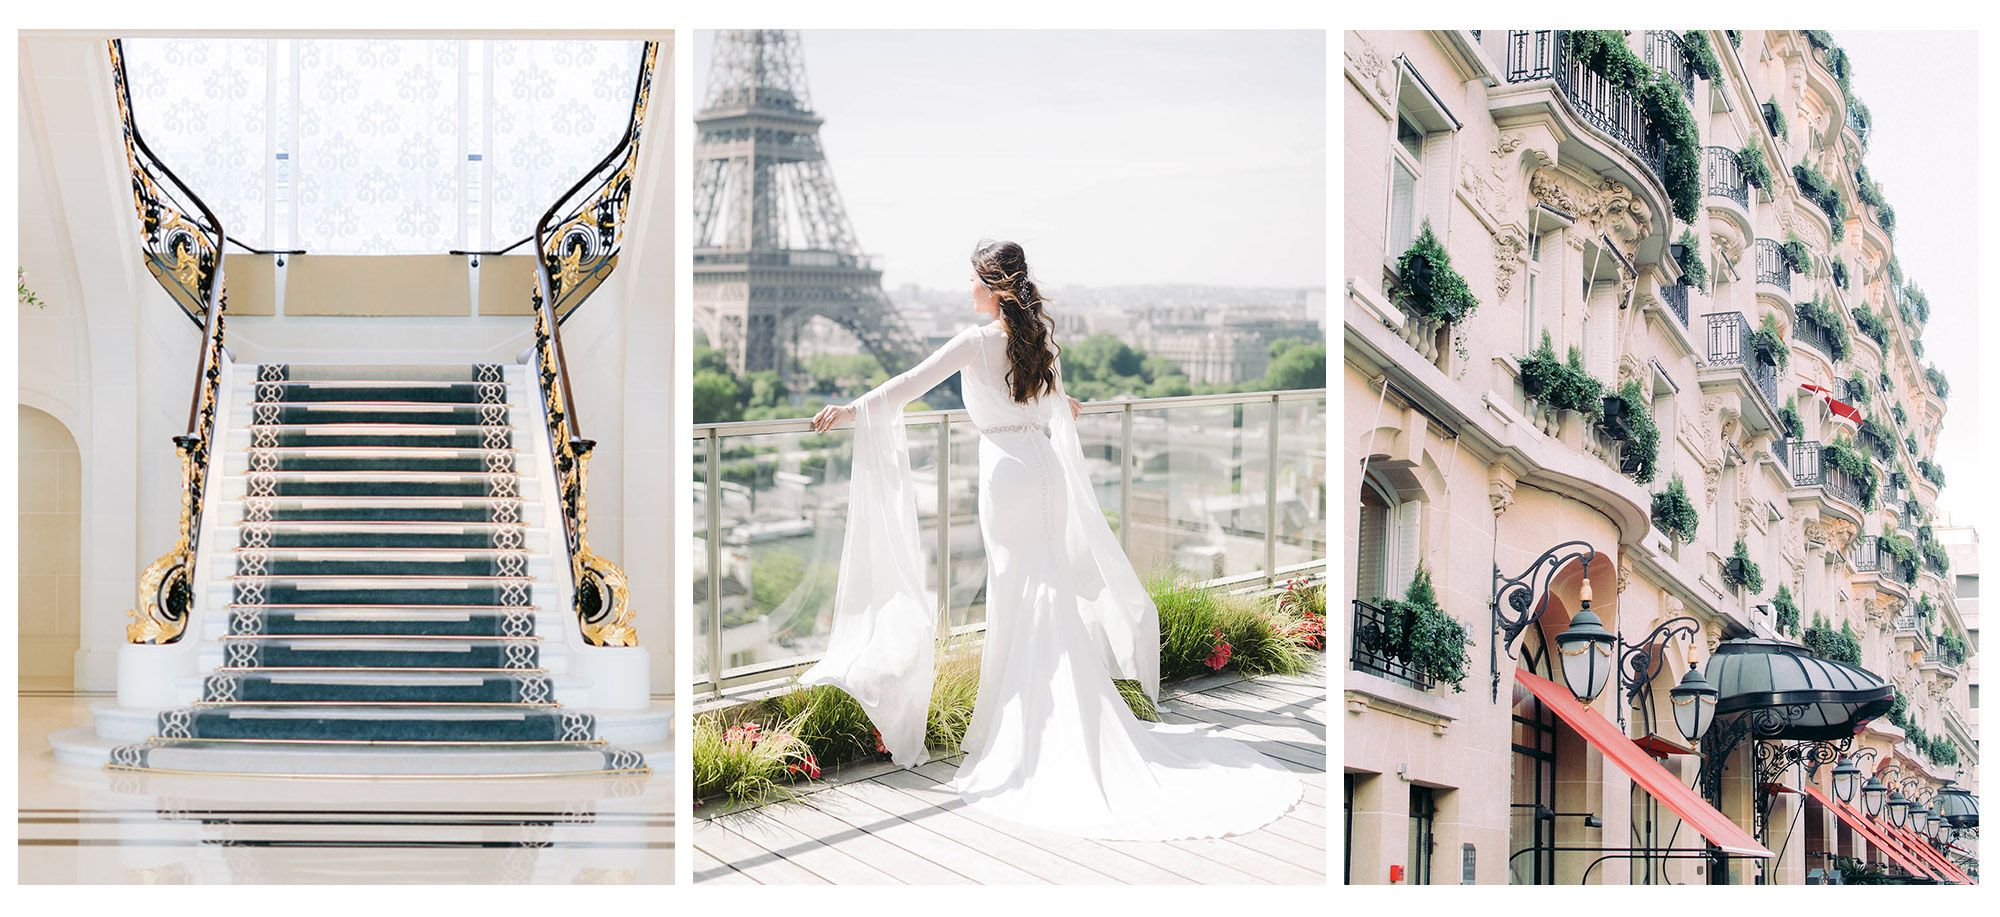 Photos de 3 palace parisiens